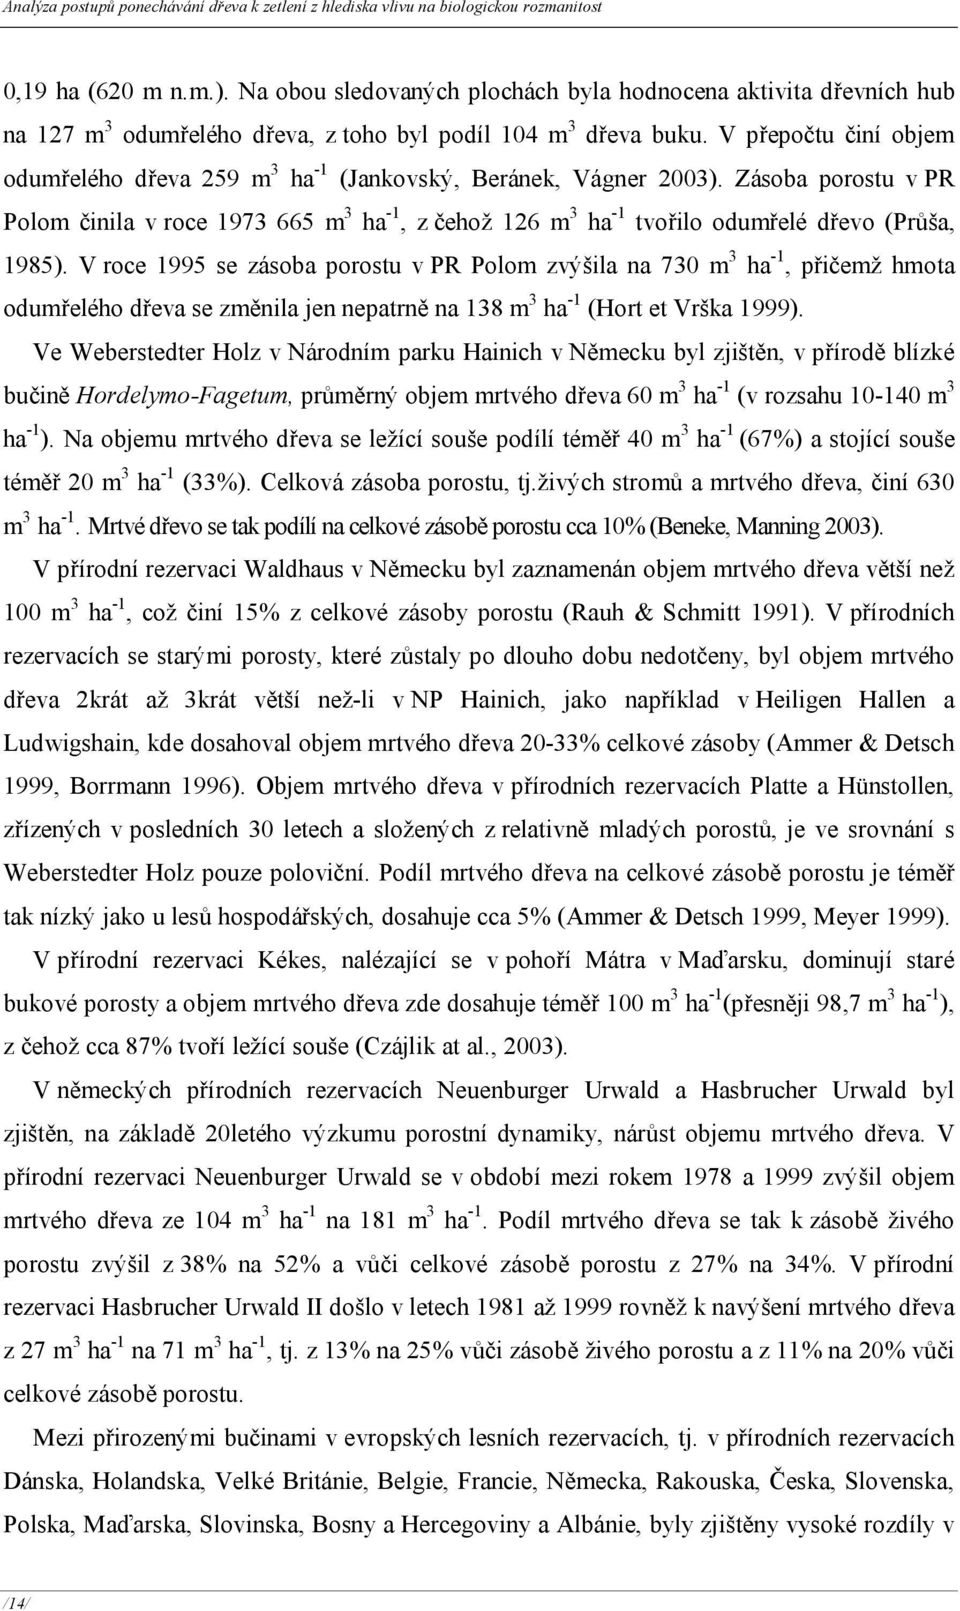 V přepočtu činí objem odumřelého dřeva 259 m 3 ha - (Jankovský, Beránek, Vágner 2003).